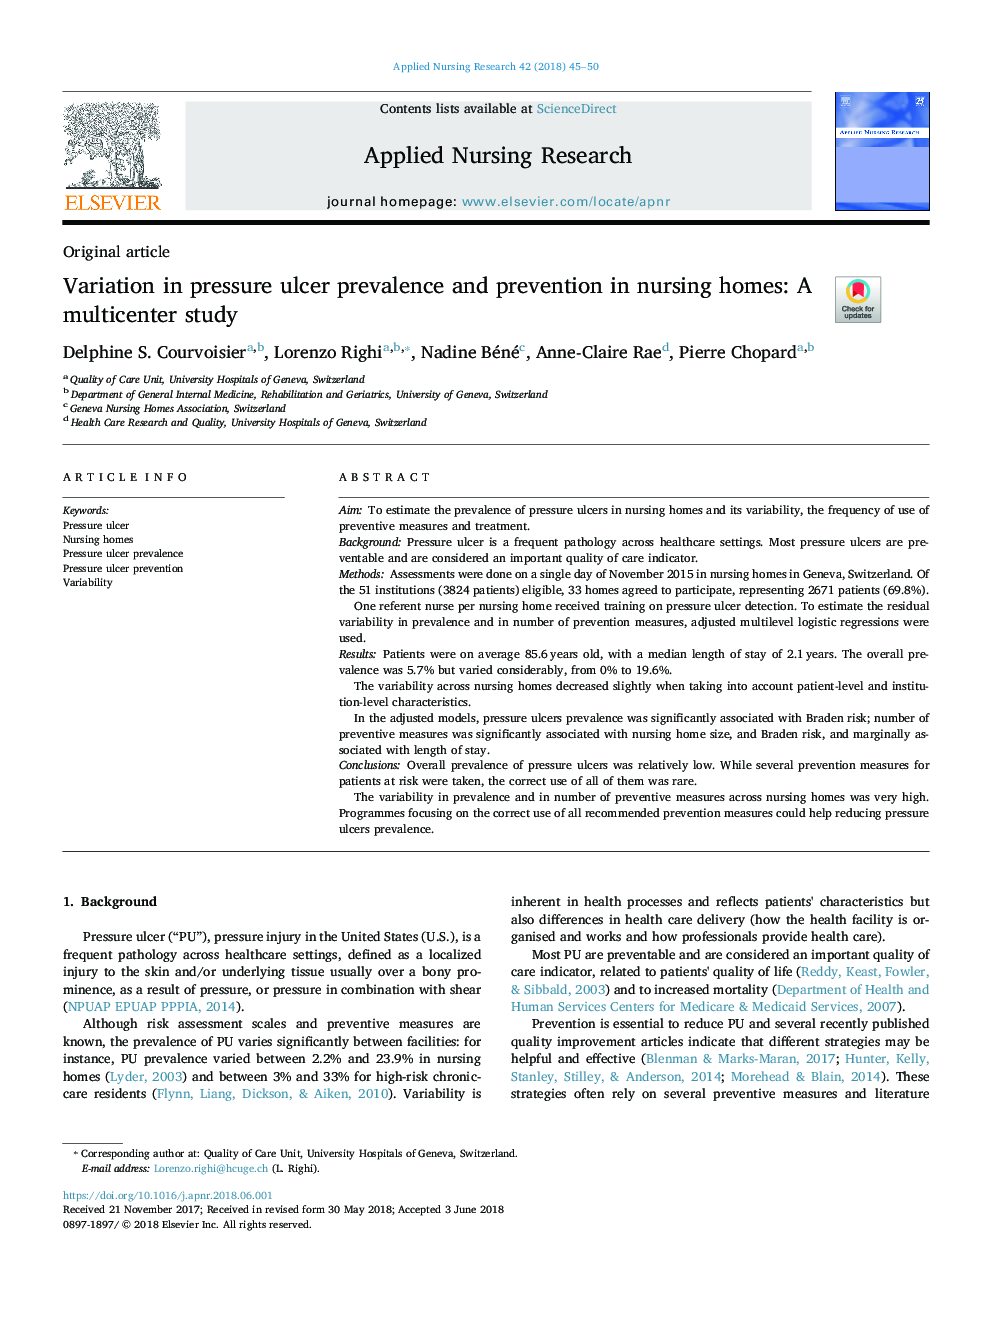 تغییرات در شیوع و پیشگیری از زخم در خانه های پرستاری: مطالعه چندرسانه ای 